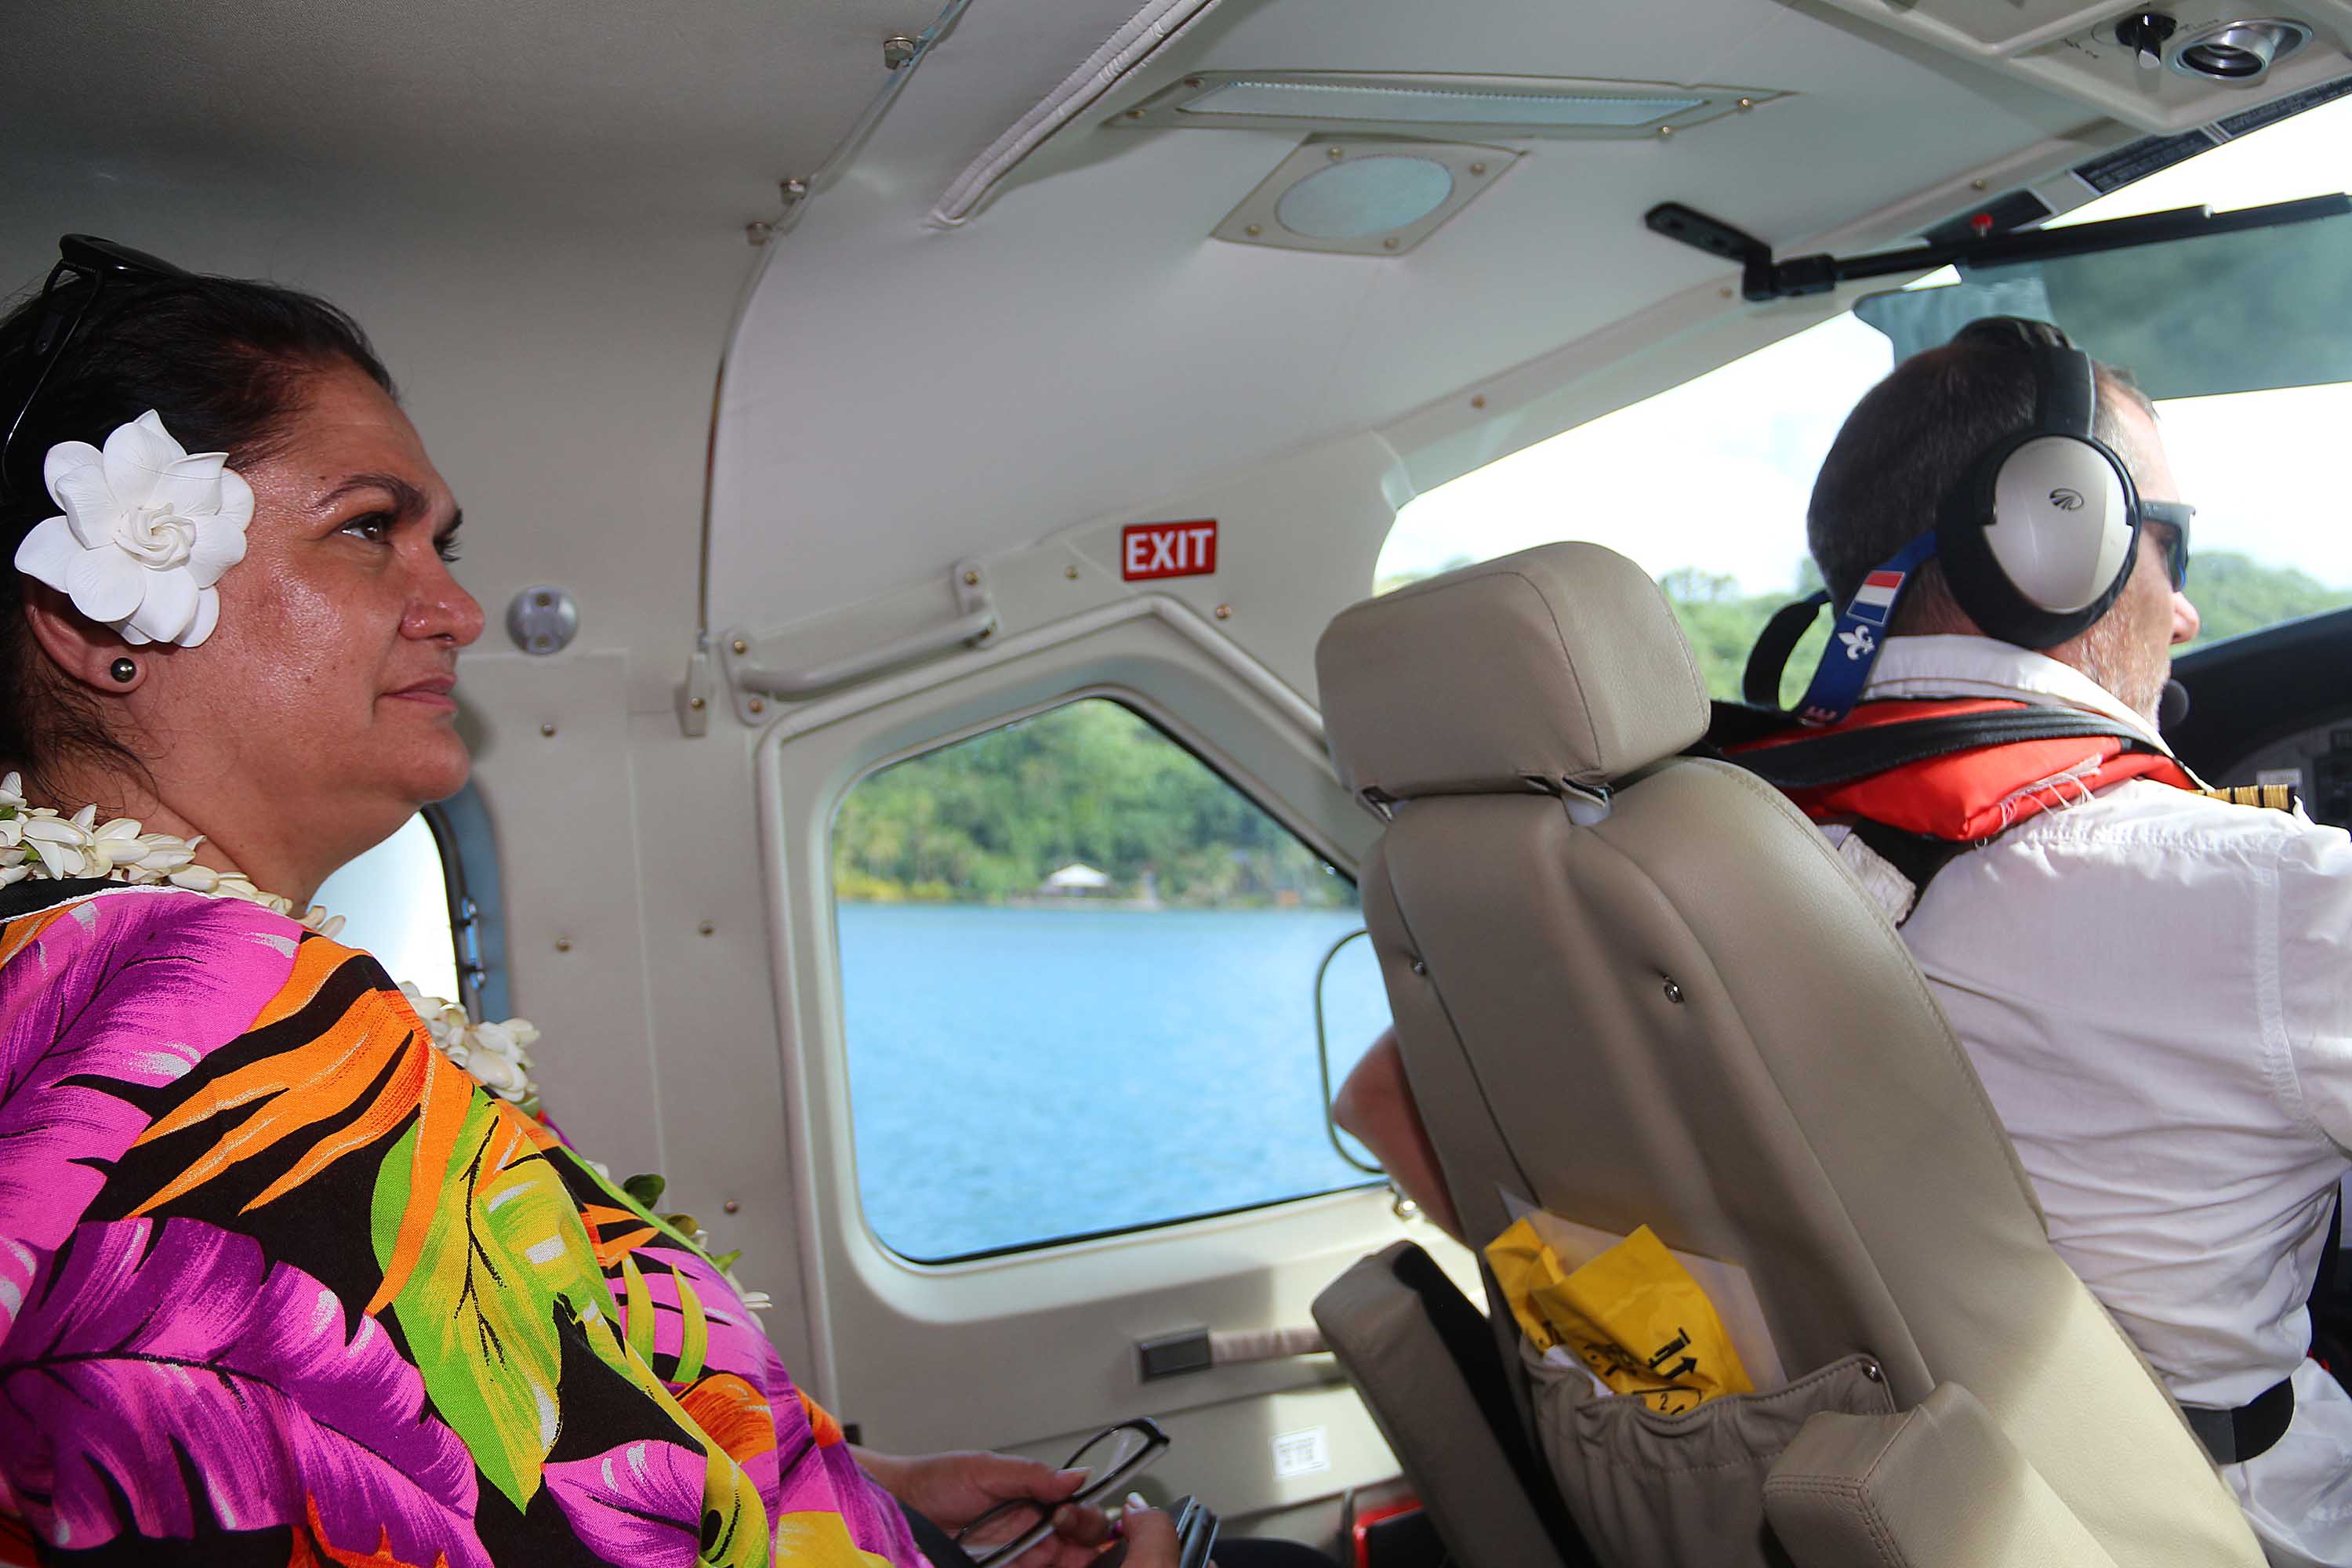 Tahiti Air Charter : début des vols en hydravion aux îles Sous-le-vent